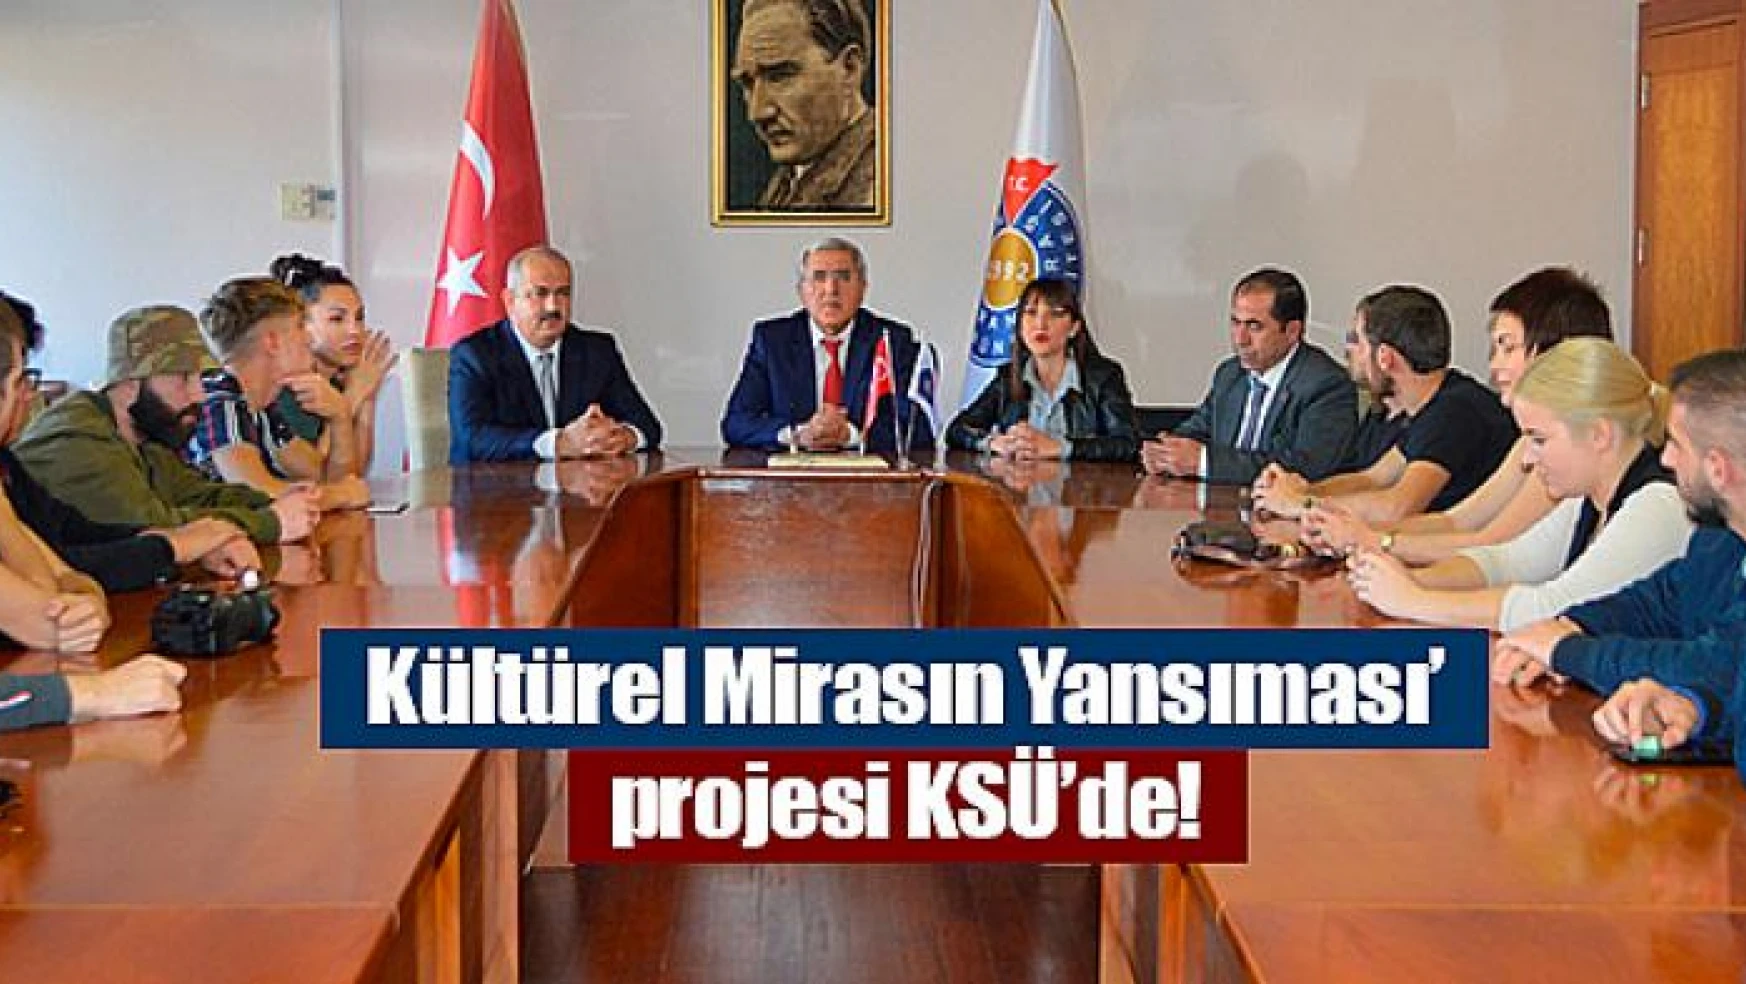 Kültürel Mirasın Yansıması' projesi KSÜ'de!